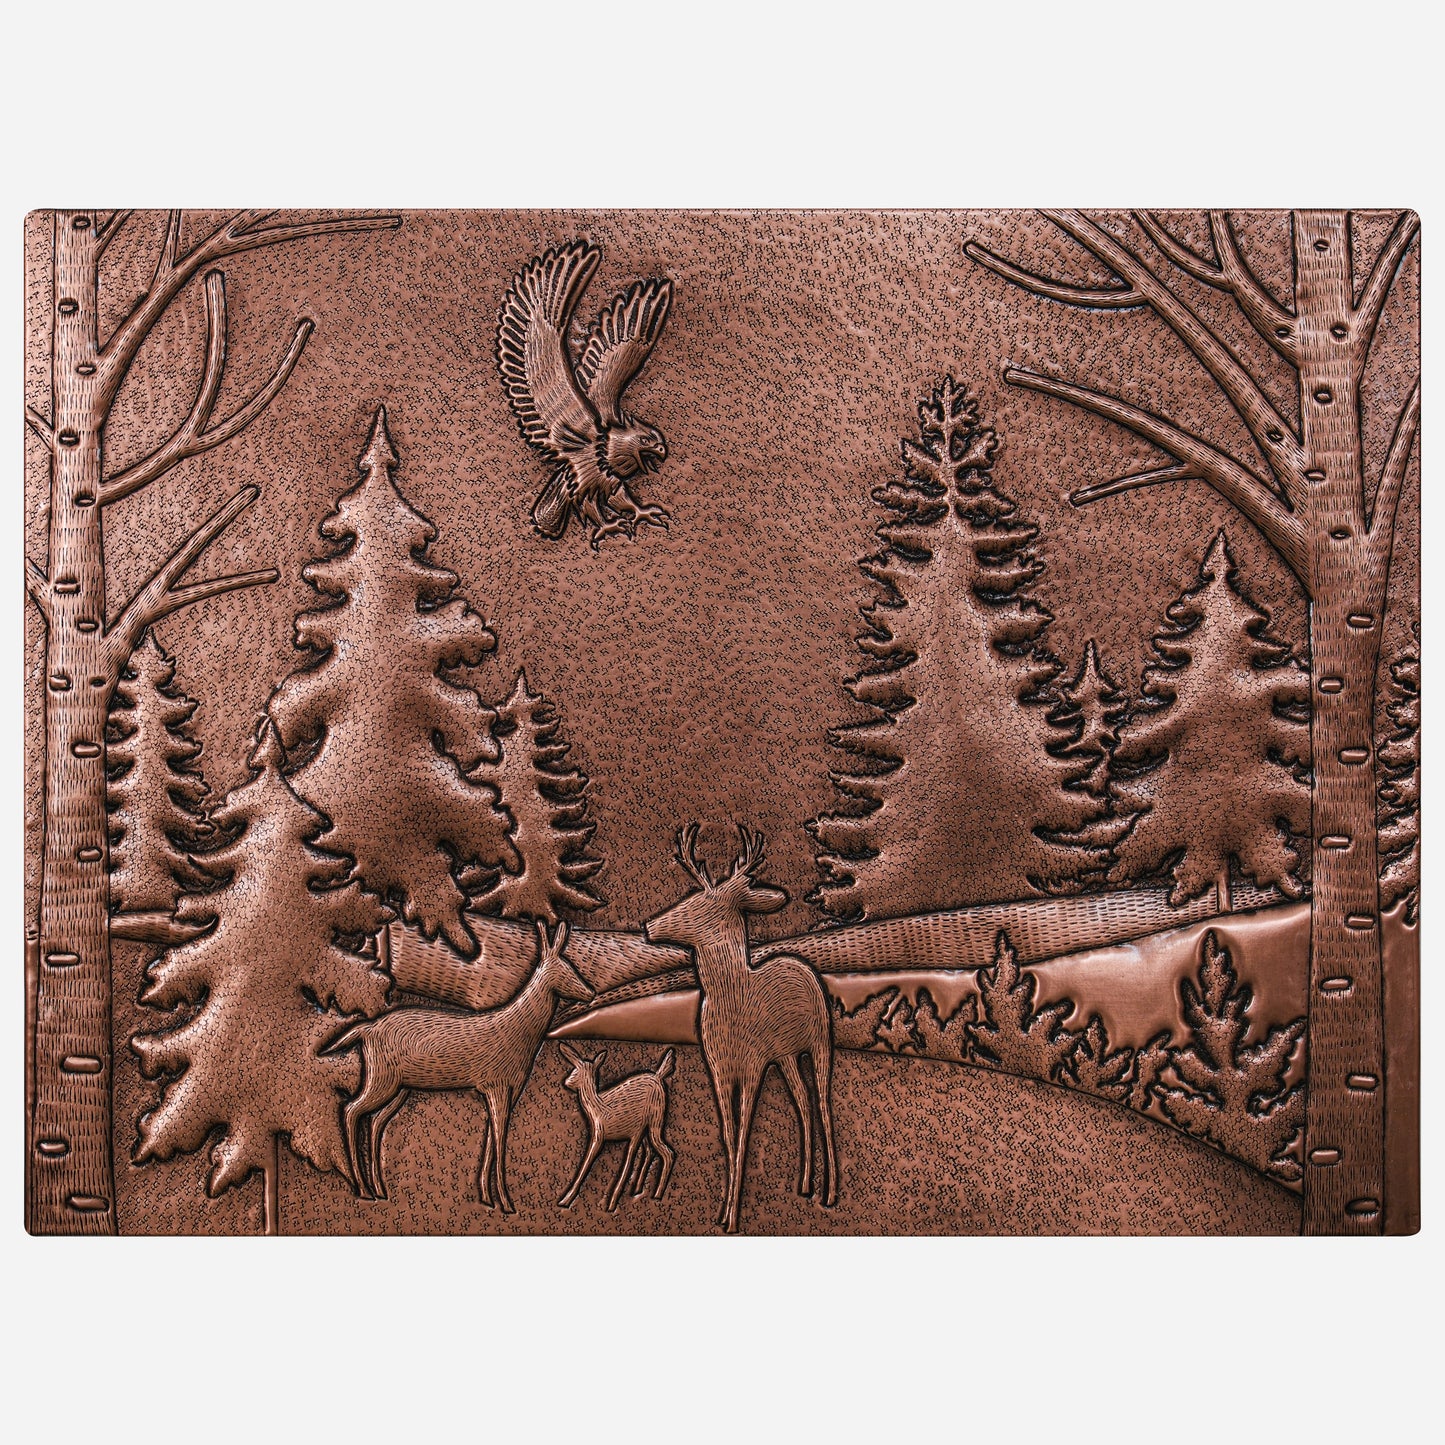 Copper Backsplash Panel (Eagle, Pine and Oak Trees and Deer Family Forest Landscape)